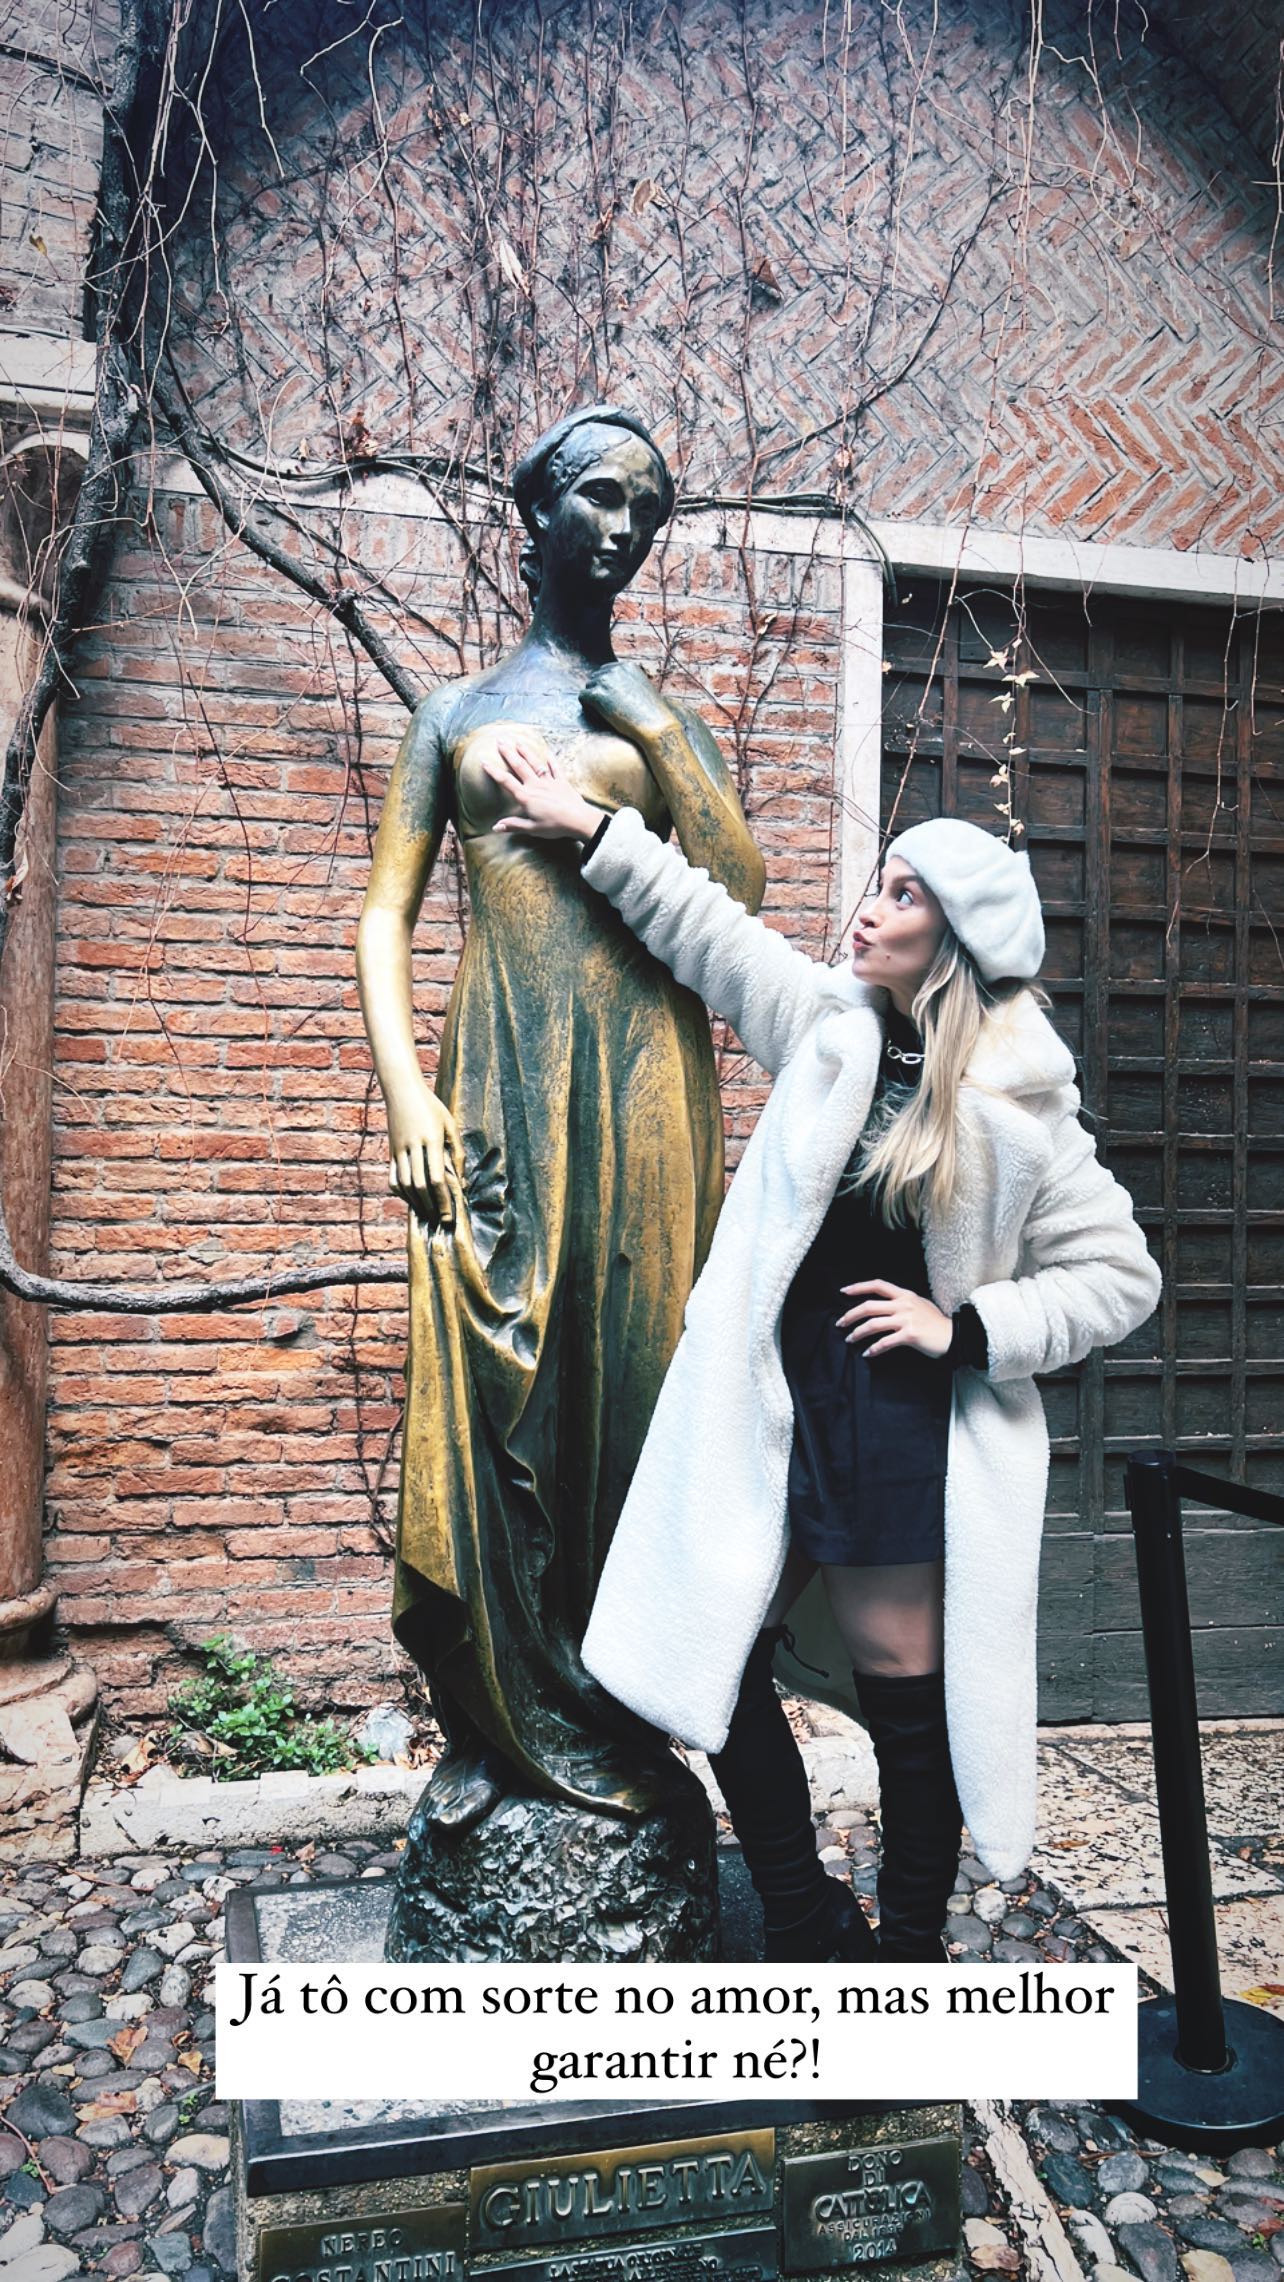 Carla Diaz toca nos seios da estátua de Julieta